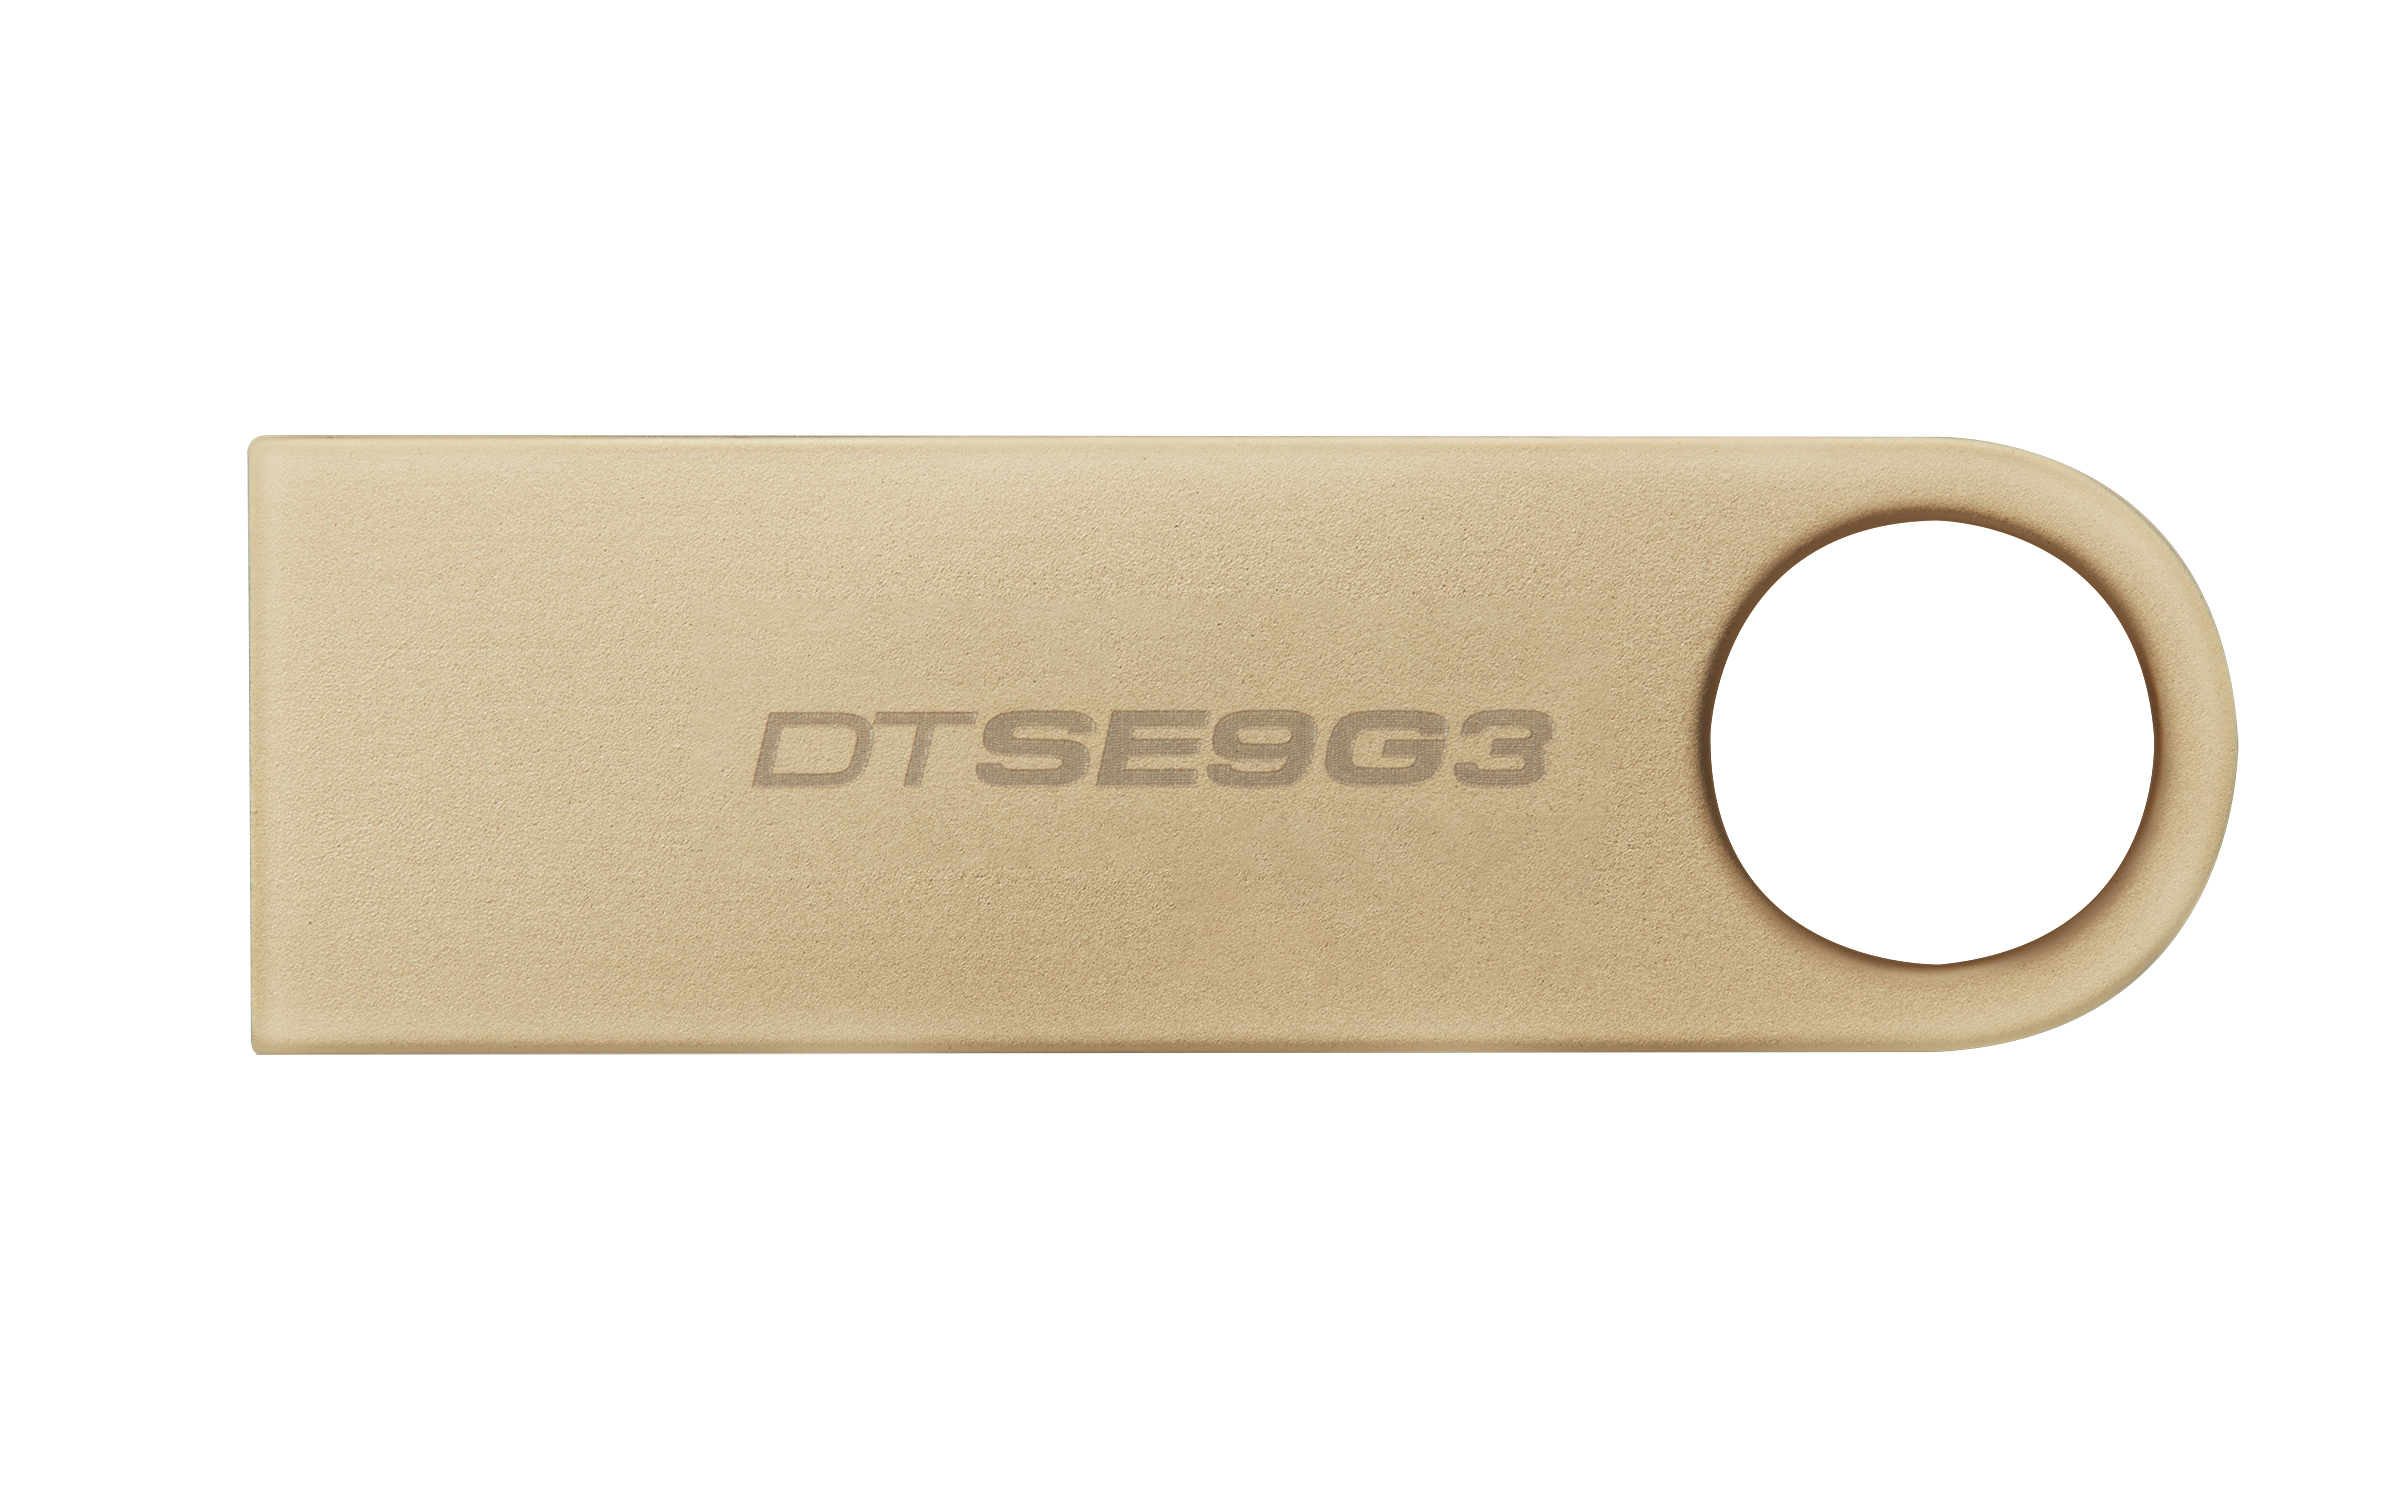 Kingston - Pen Kingston DataTraveler SE9 G3 64GB USB3.2 Gen 1